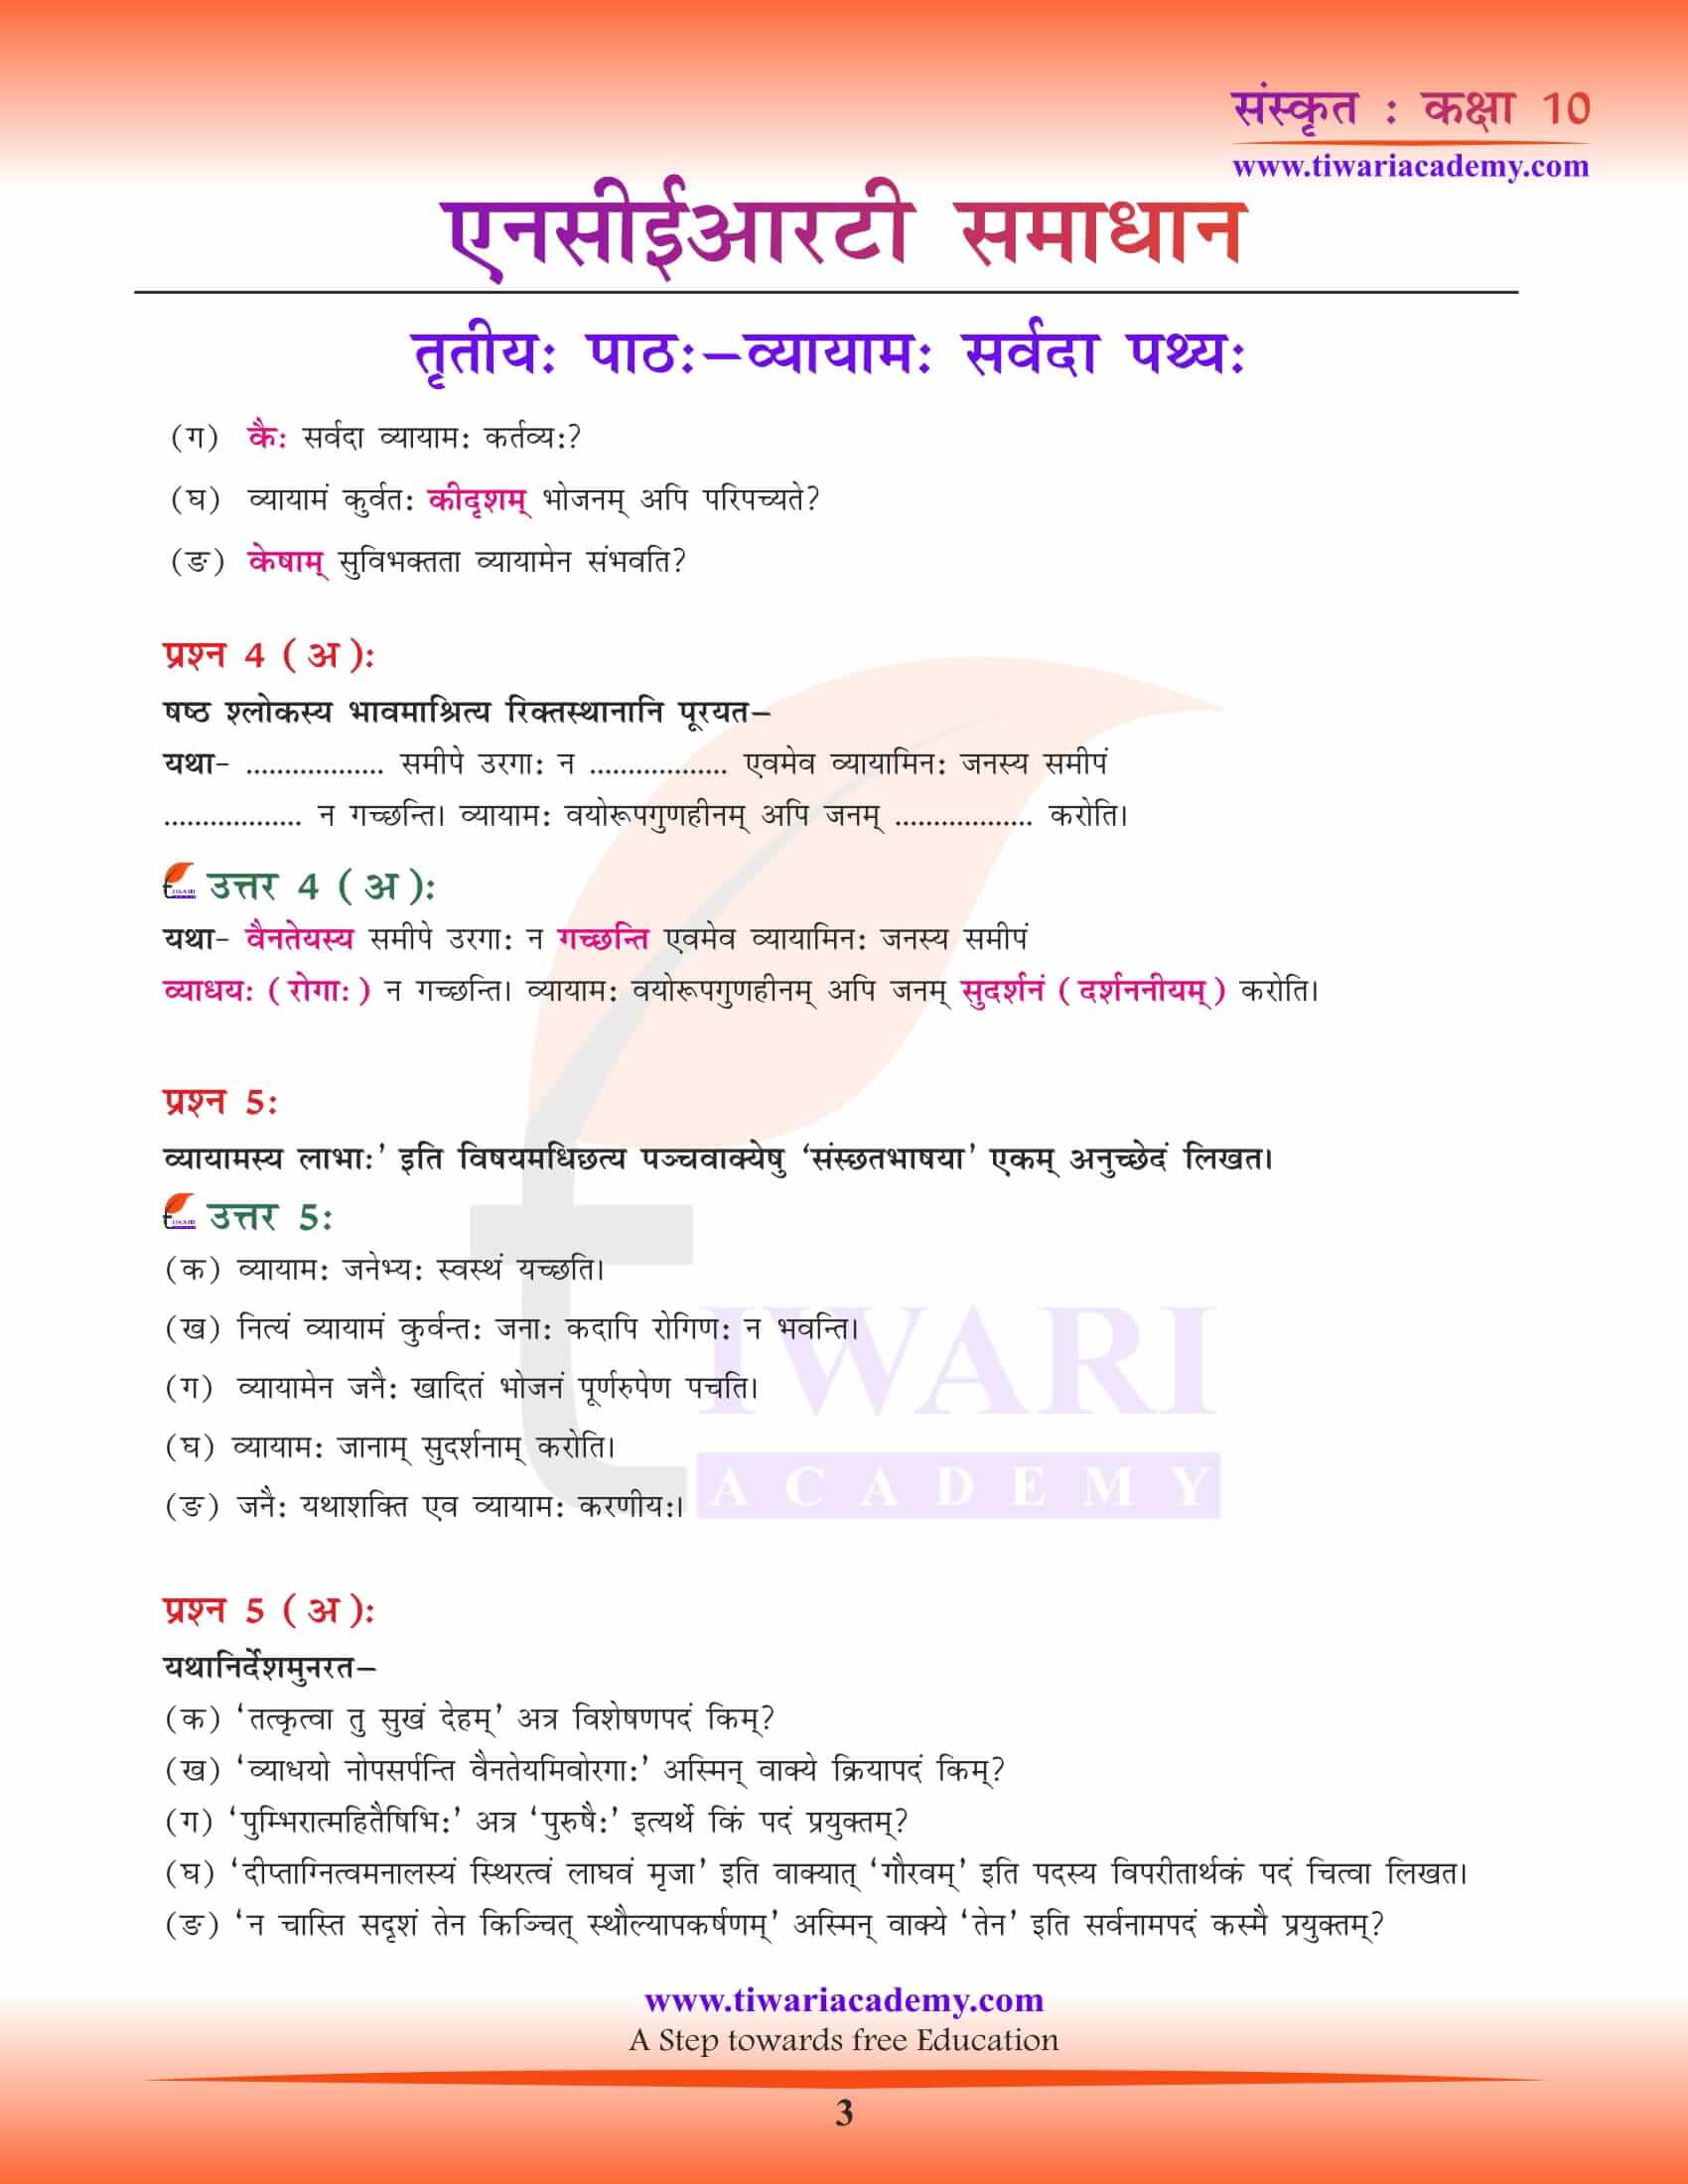 NCERT Solutions for Class 10 Sanskrit Chapter 3 free